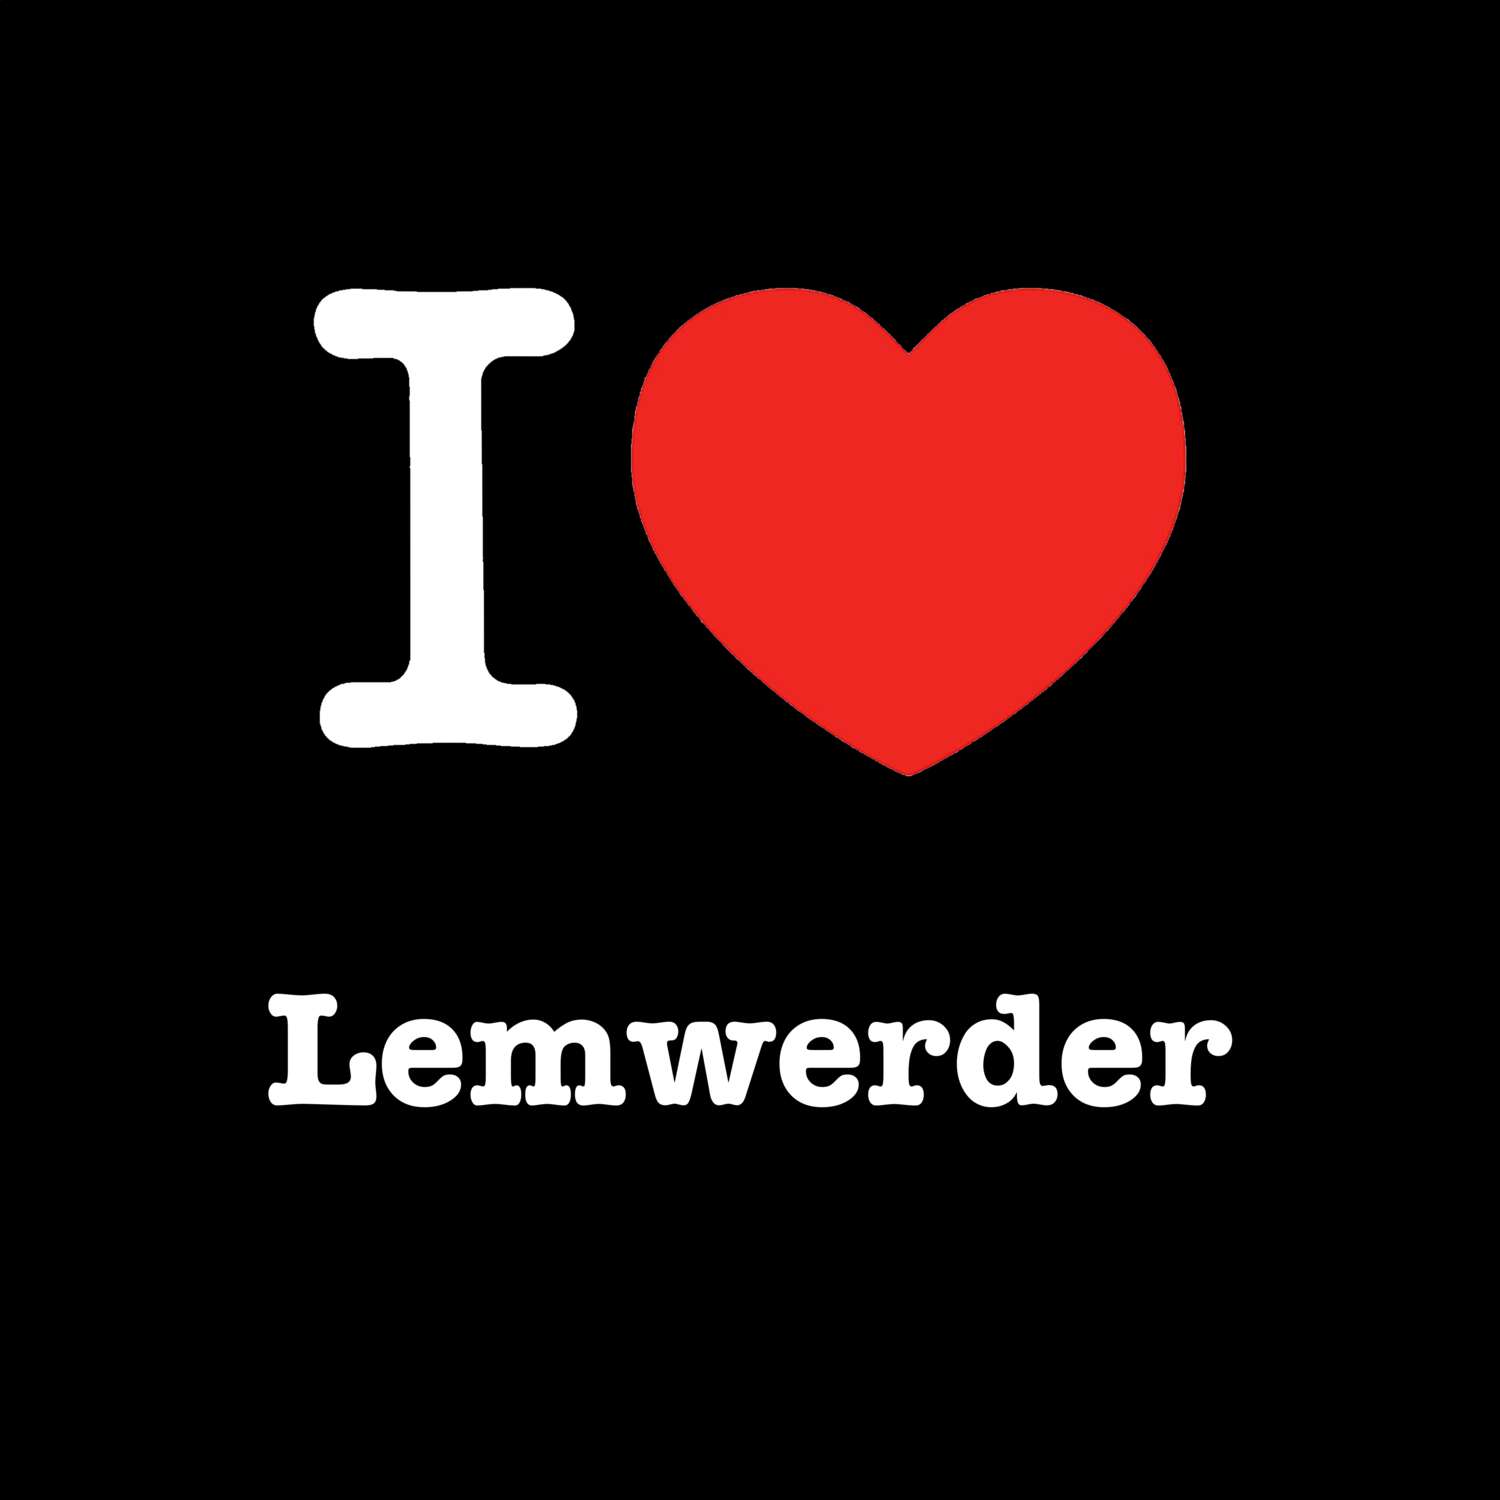 Lemwerder T-Shirt »I love«